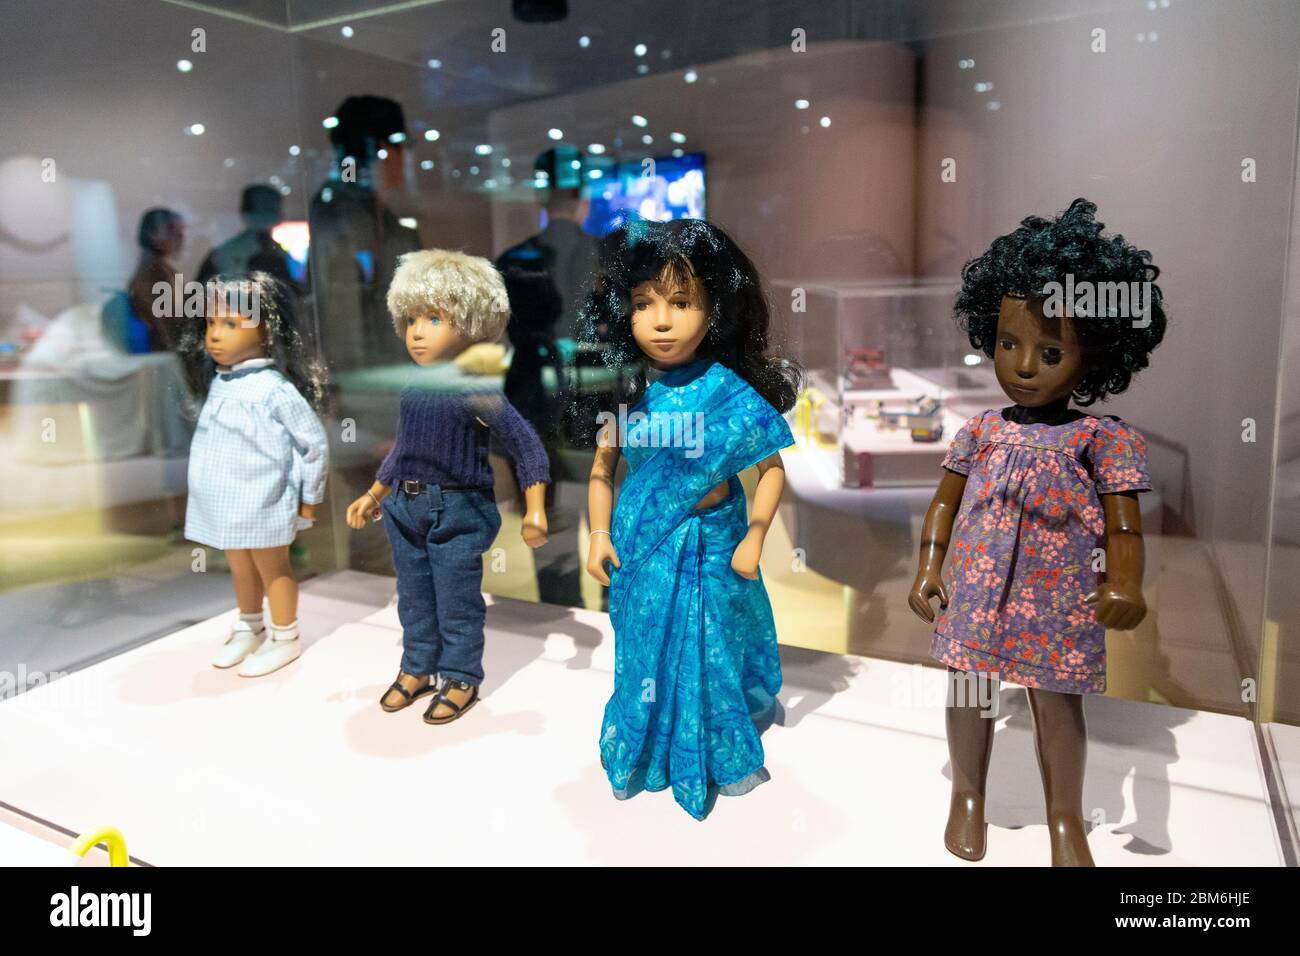 Bambole di Sasha che mettono in risalto la diversità, le culture e le etnie diverse alla mostra "Play Well" alla Wellcome Collection, Londra, Regno Unito Foto Stock